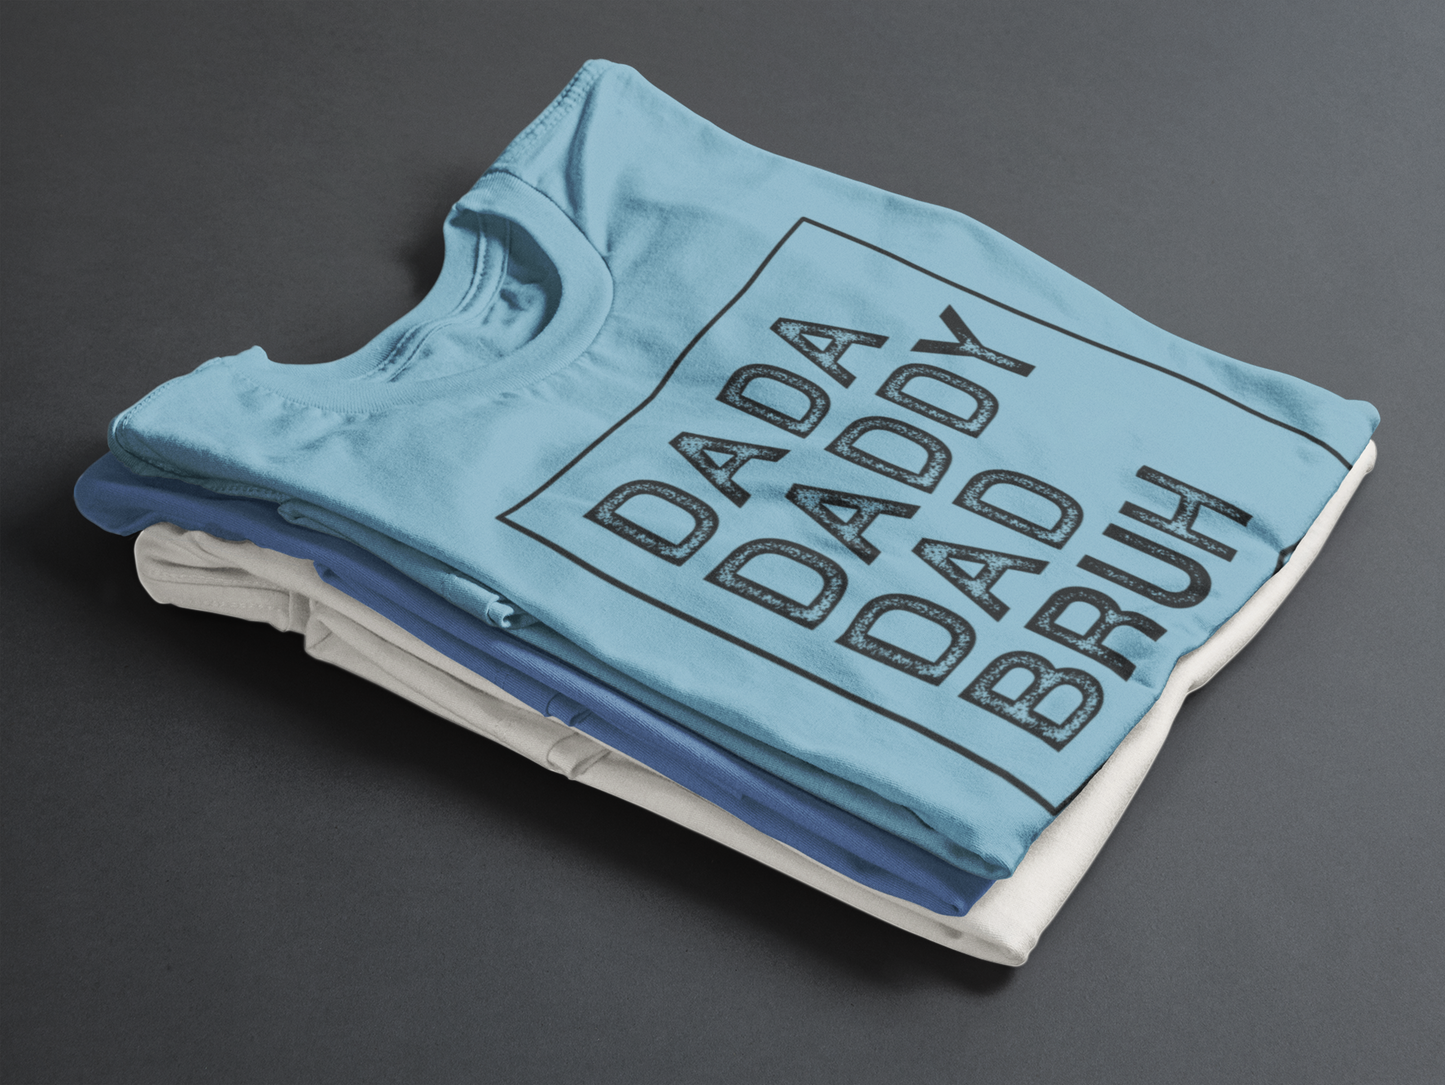 Dada, Daddy, Dad, Bruh Shirt